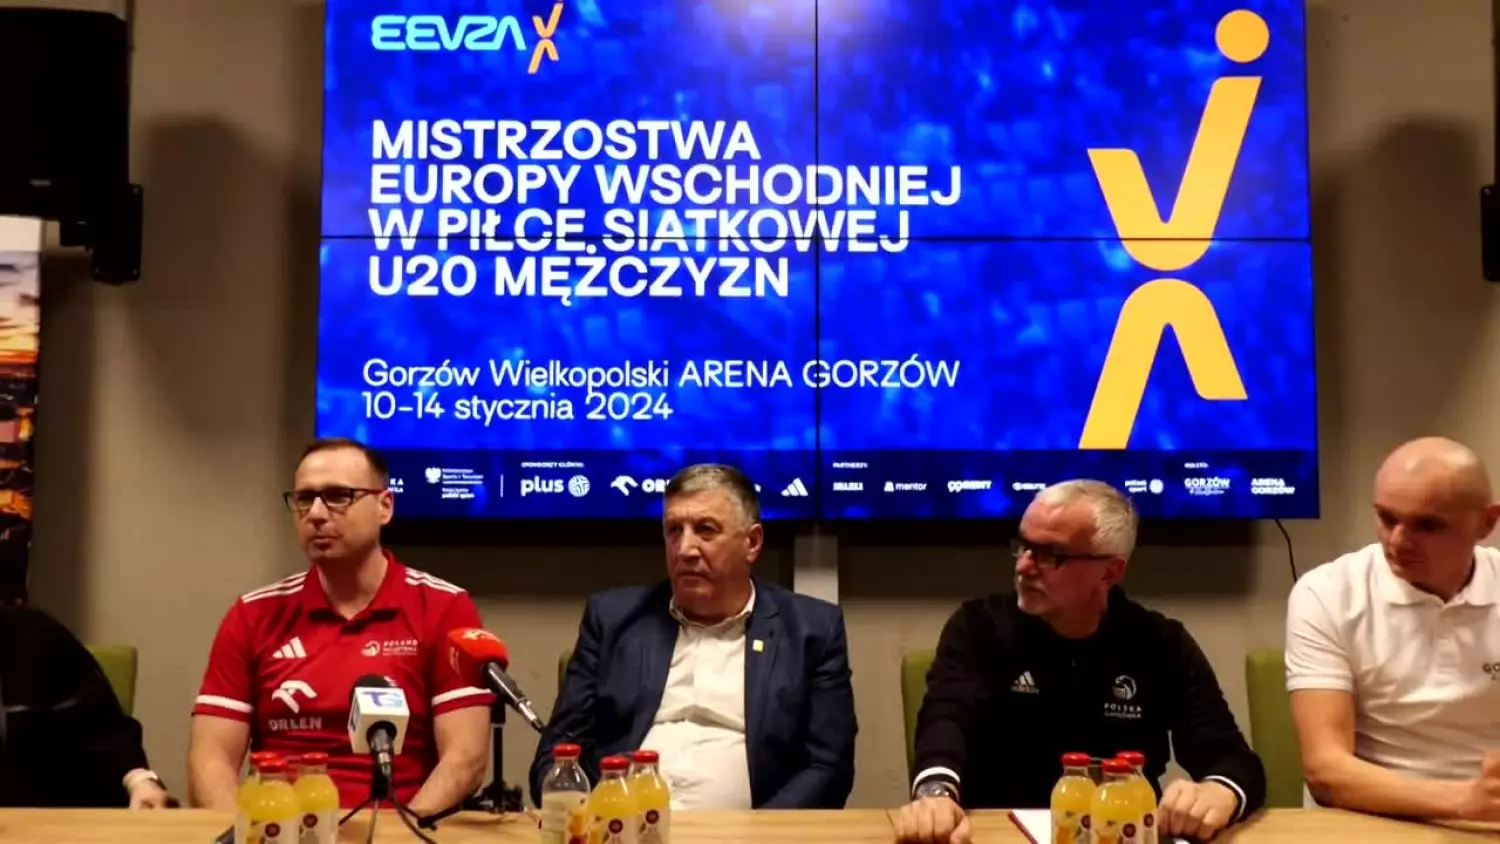 Mistrzostwa Europy Wschodniej w Piłce Siatkowej Mężczyzn U20